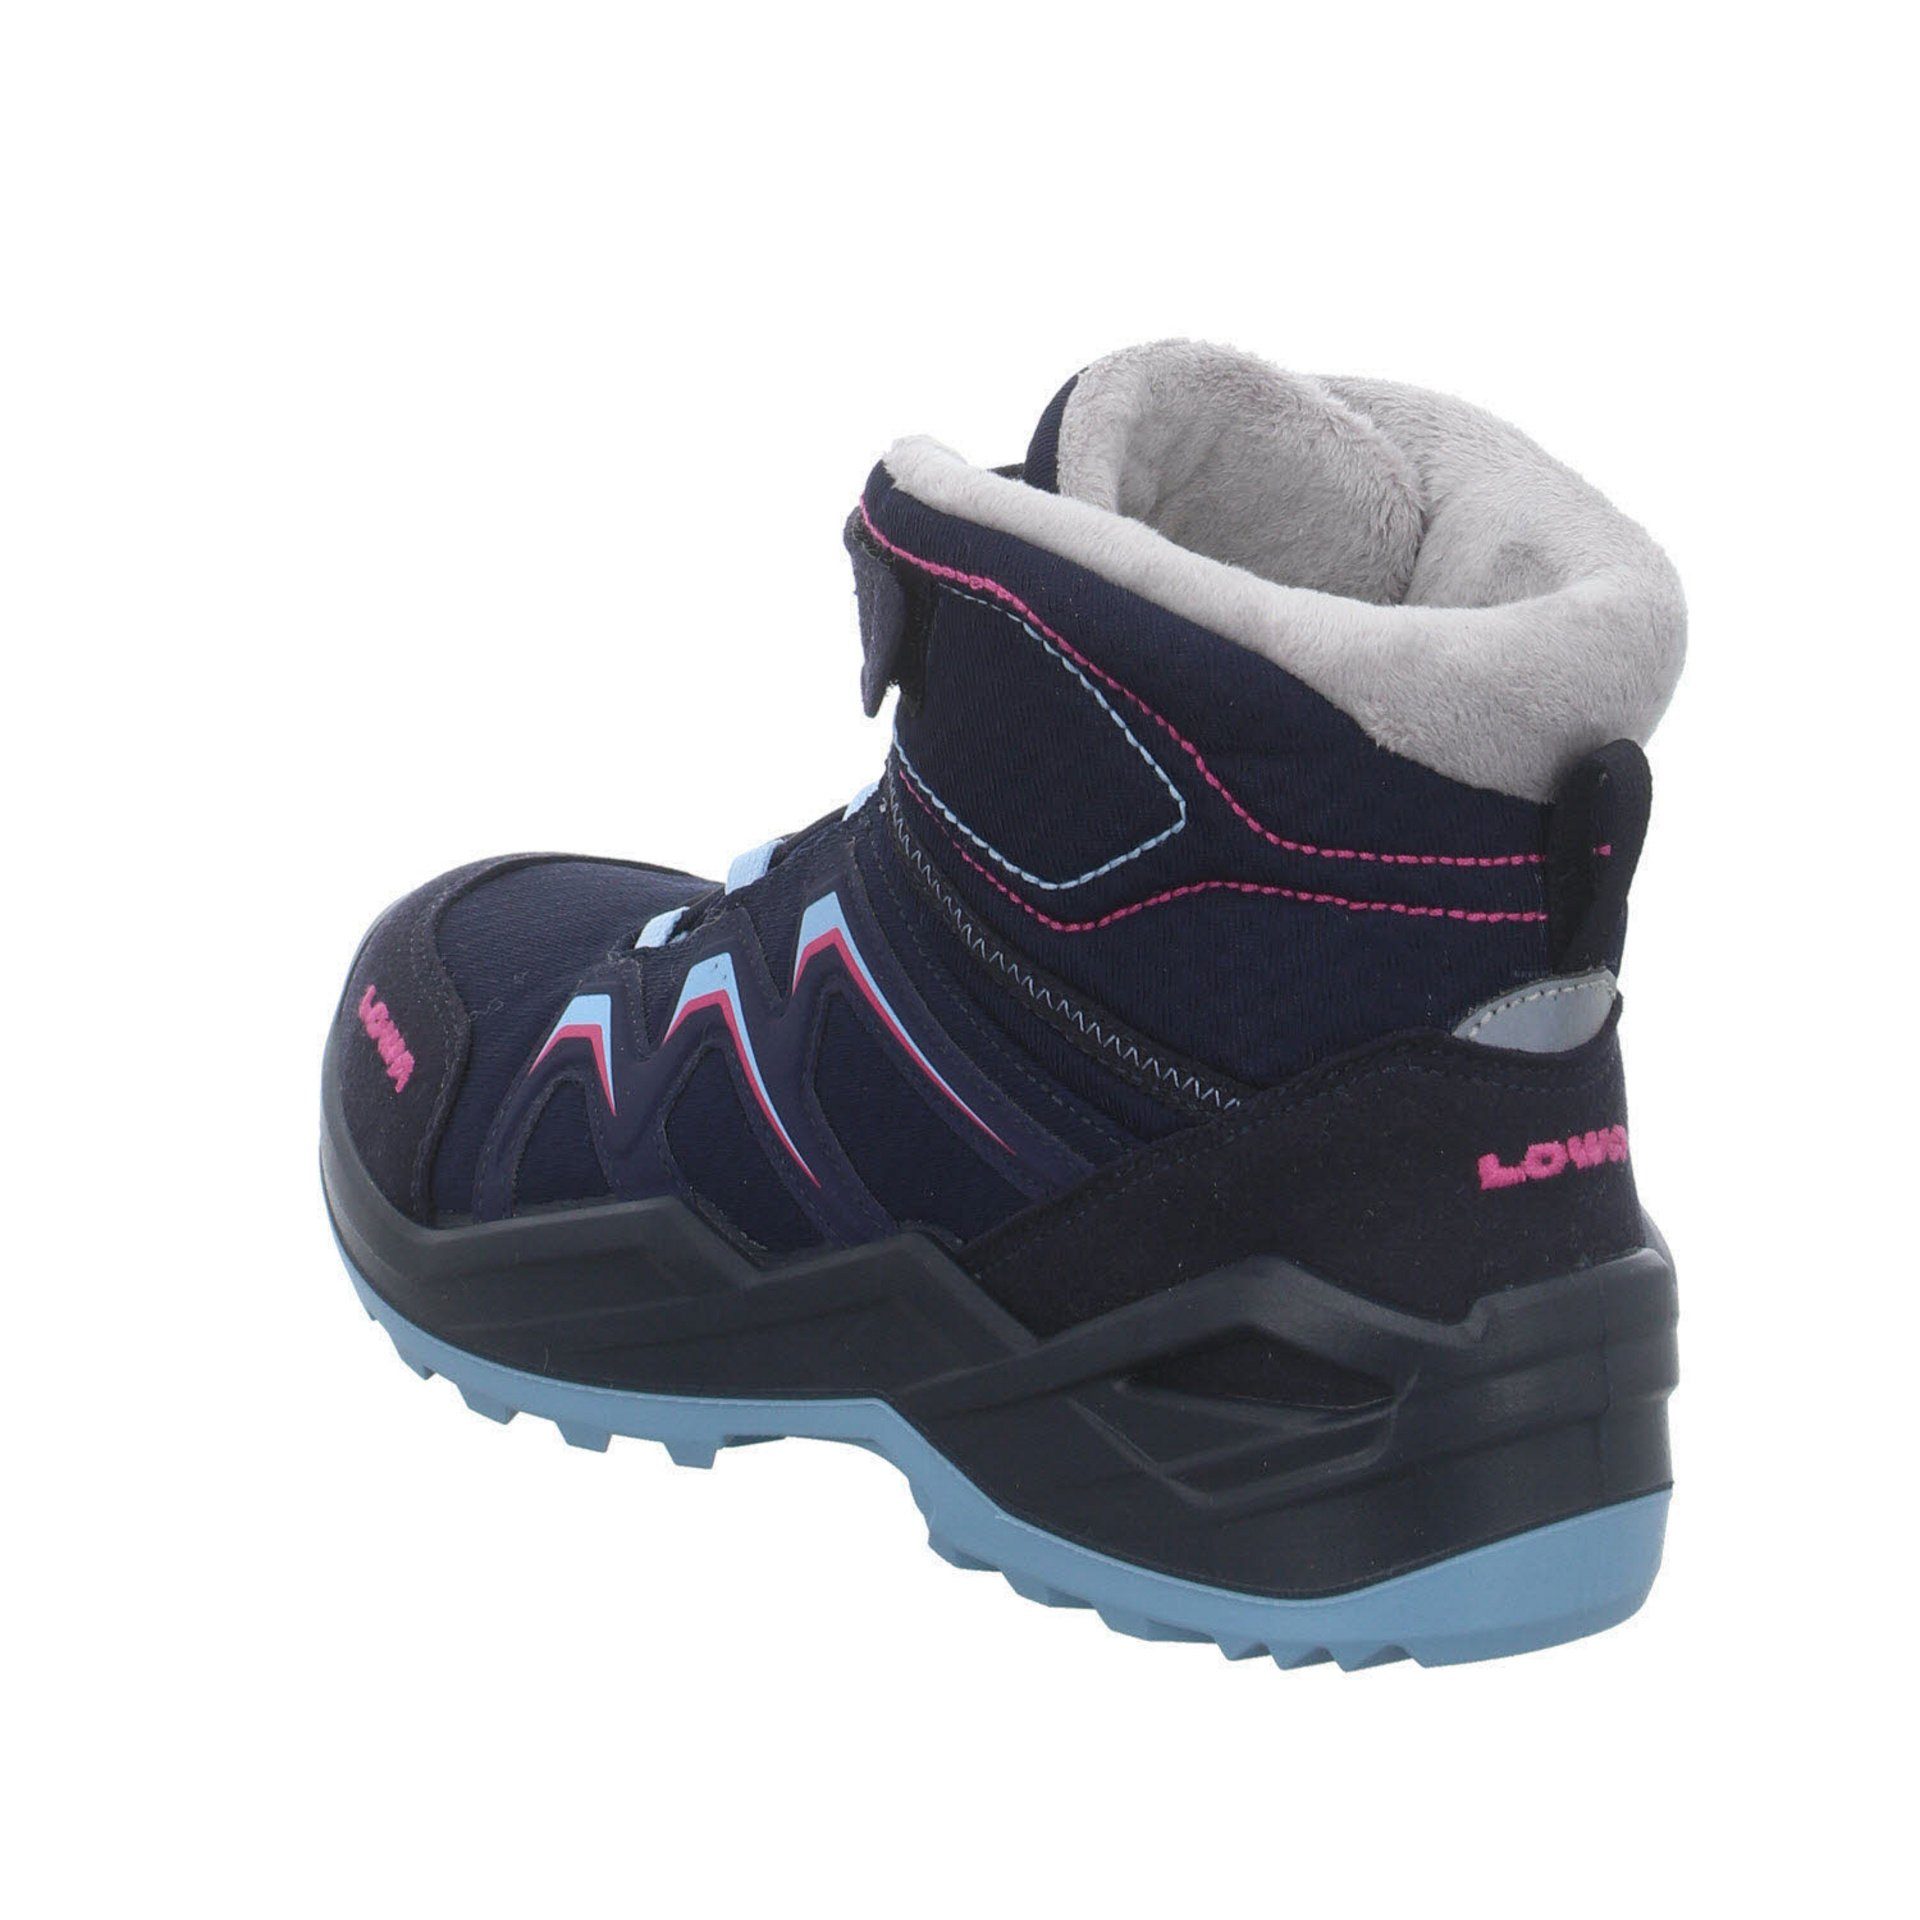 Warm Stiefel GTX Stiefel Textil Boots Jungen NAVY/BEERE Schuhe Maddox Lowa